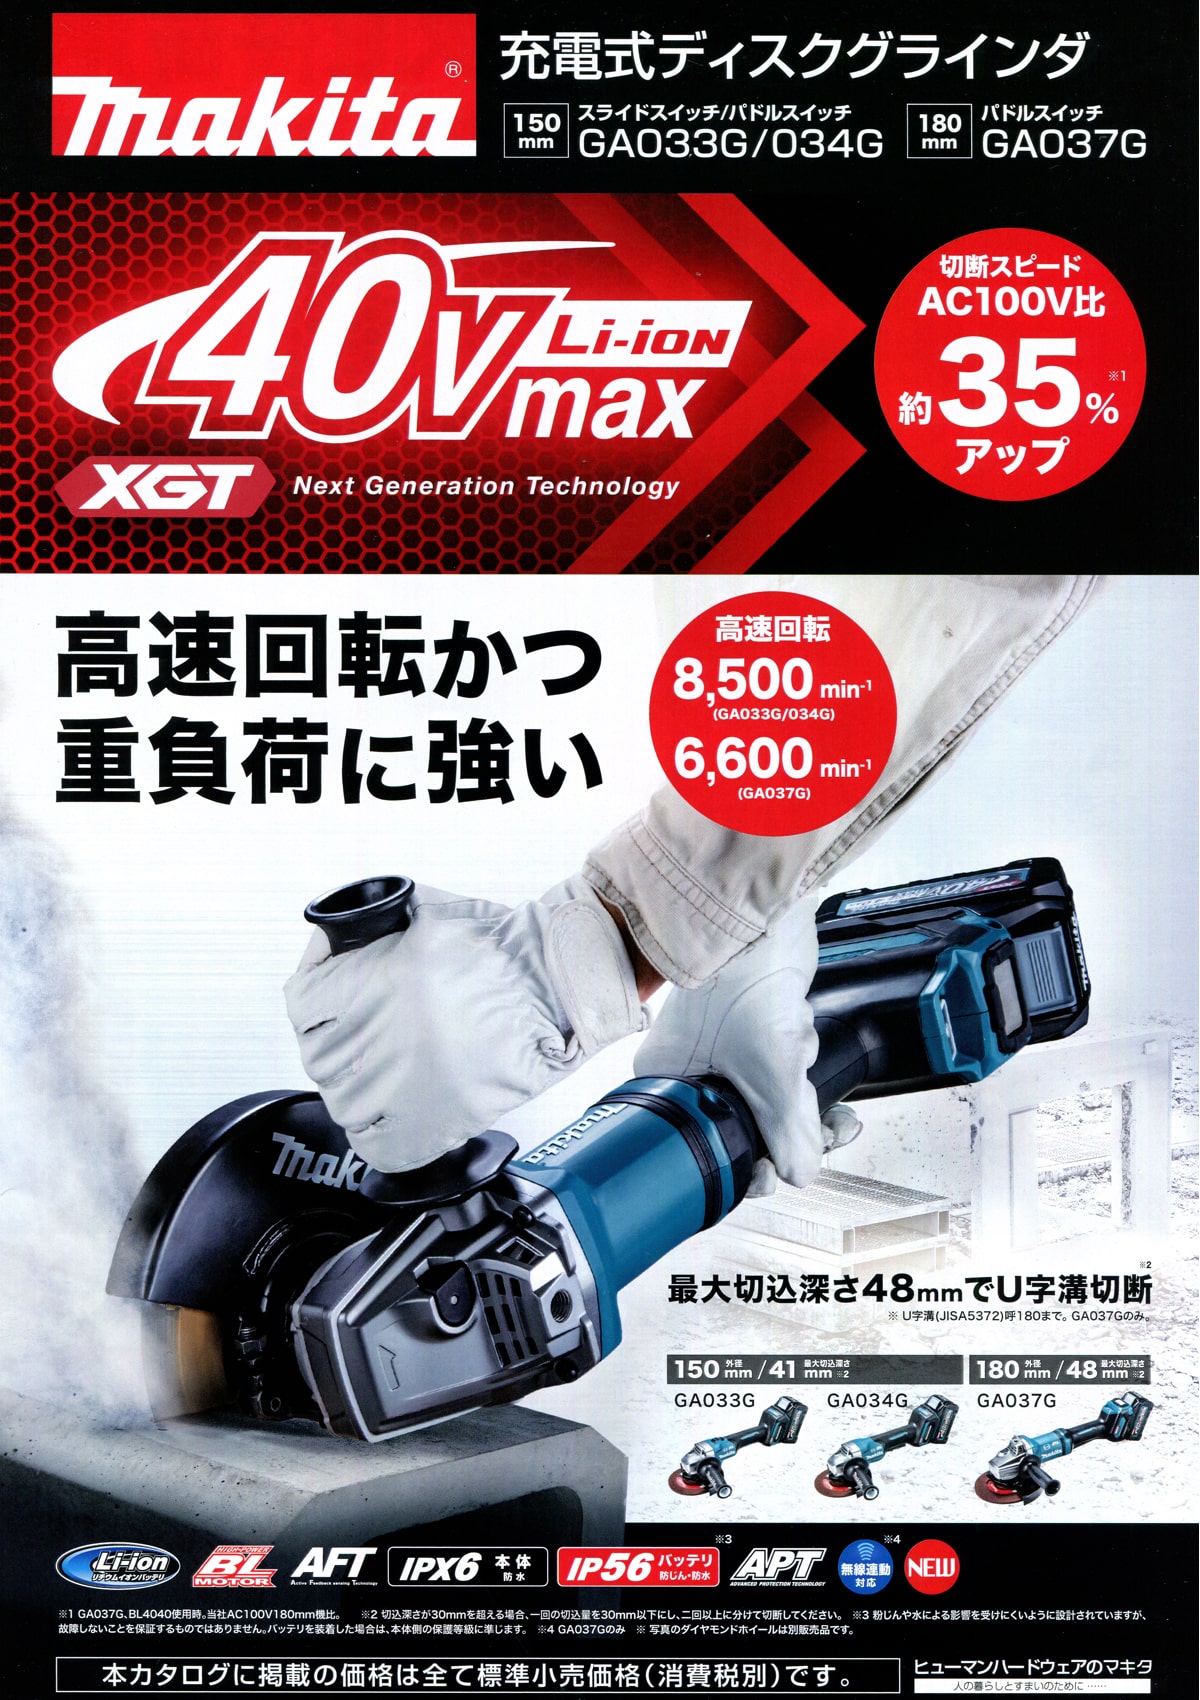 マキタ GA034GRMX 40Vmax充電式ディスクグラインダ 150mm ウエダ金物【公式サイト】